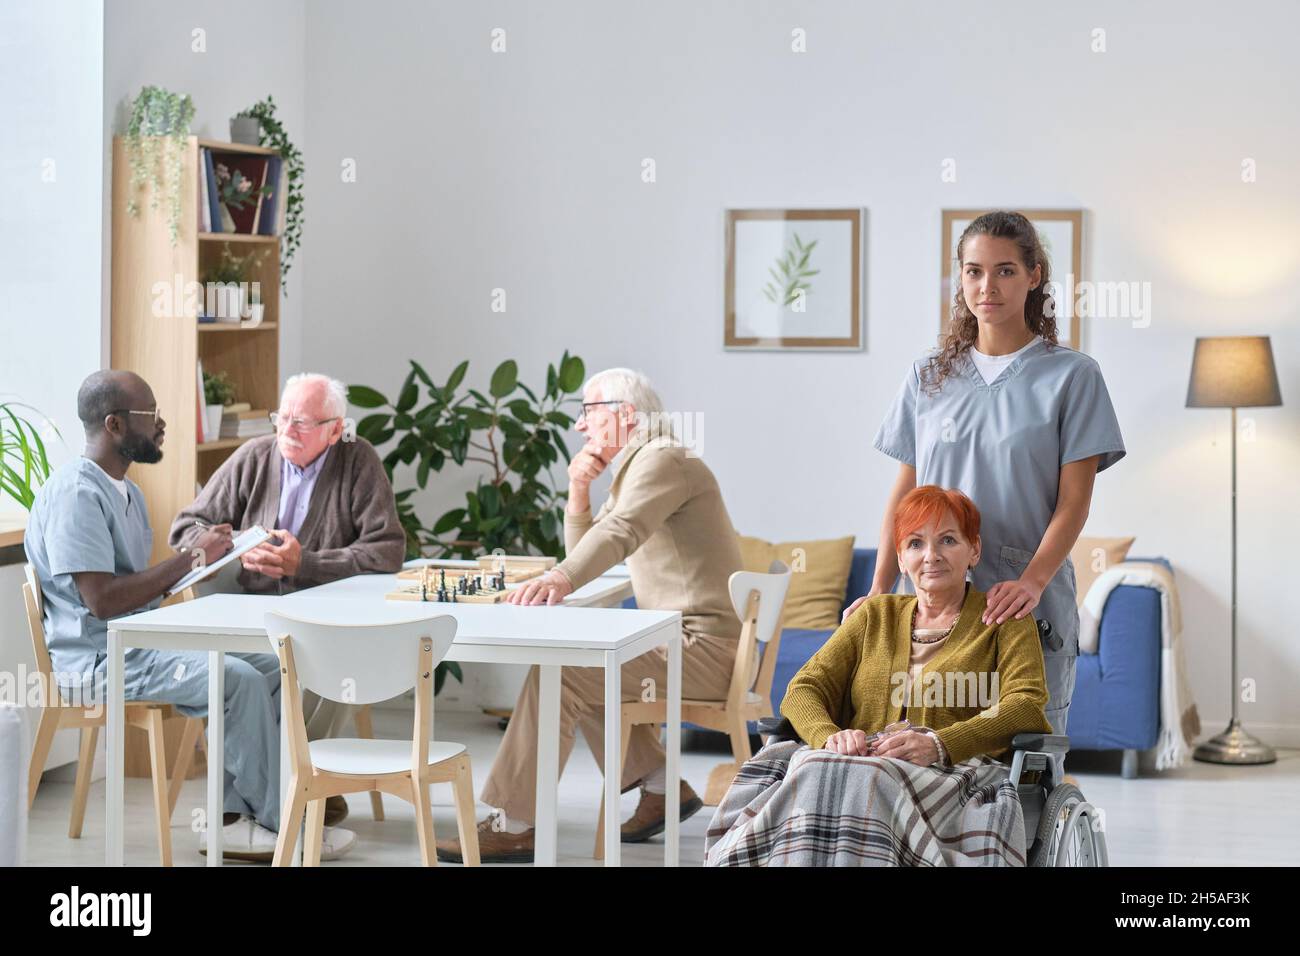 Porträt einer jungen Krankenschwester mit einer älteren Frau, die lächelt vor der Kamera während ihrer Arbeit im Pflegeheim kümmert sie sich um ältere Menschen Stockfoto